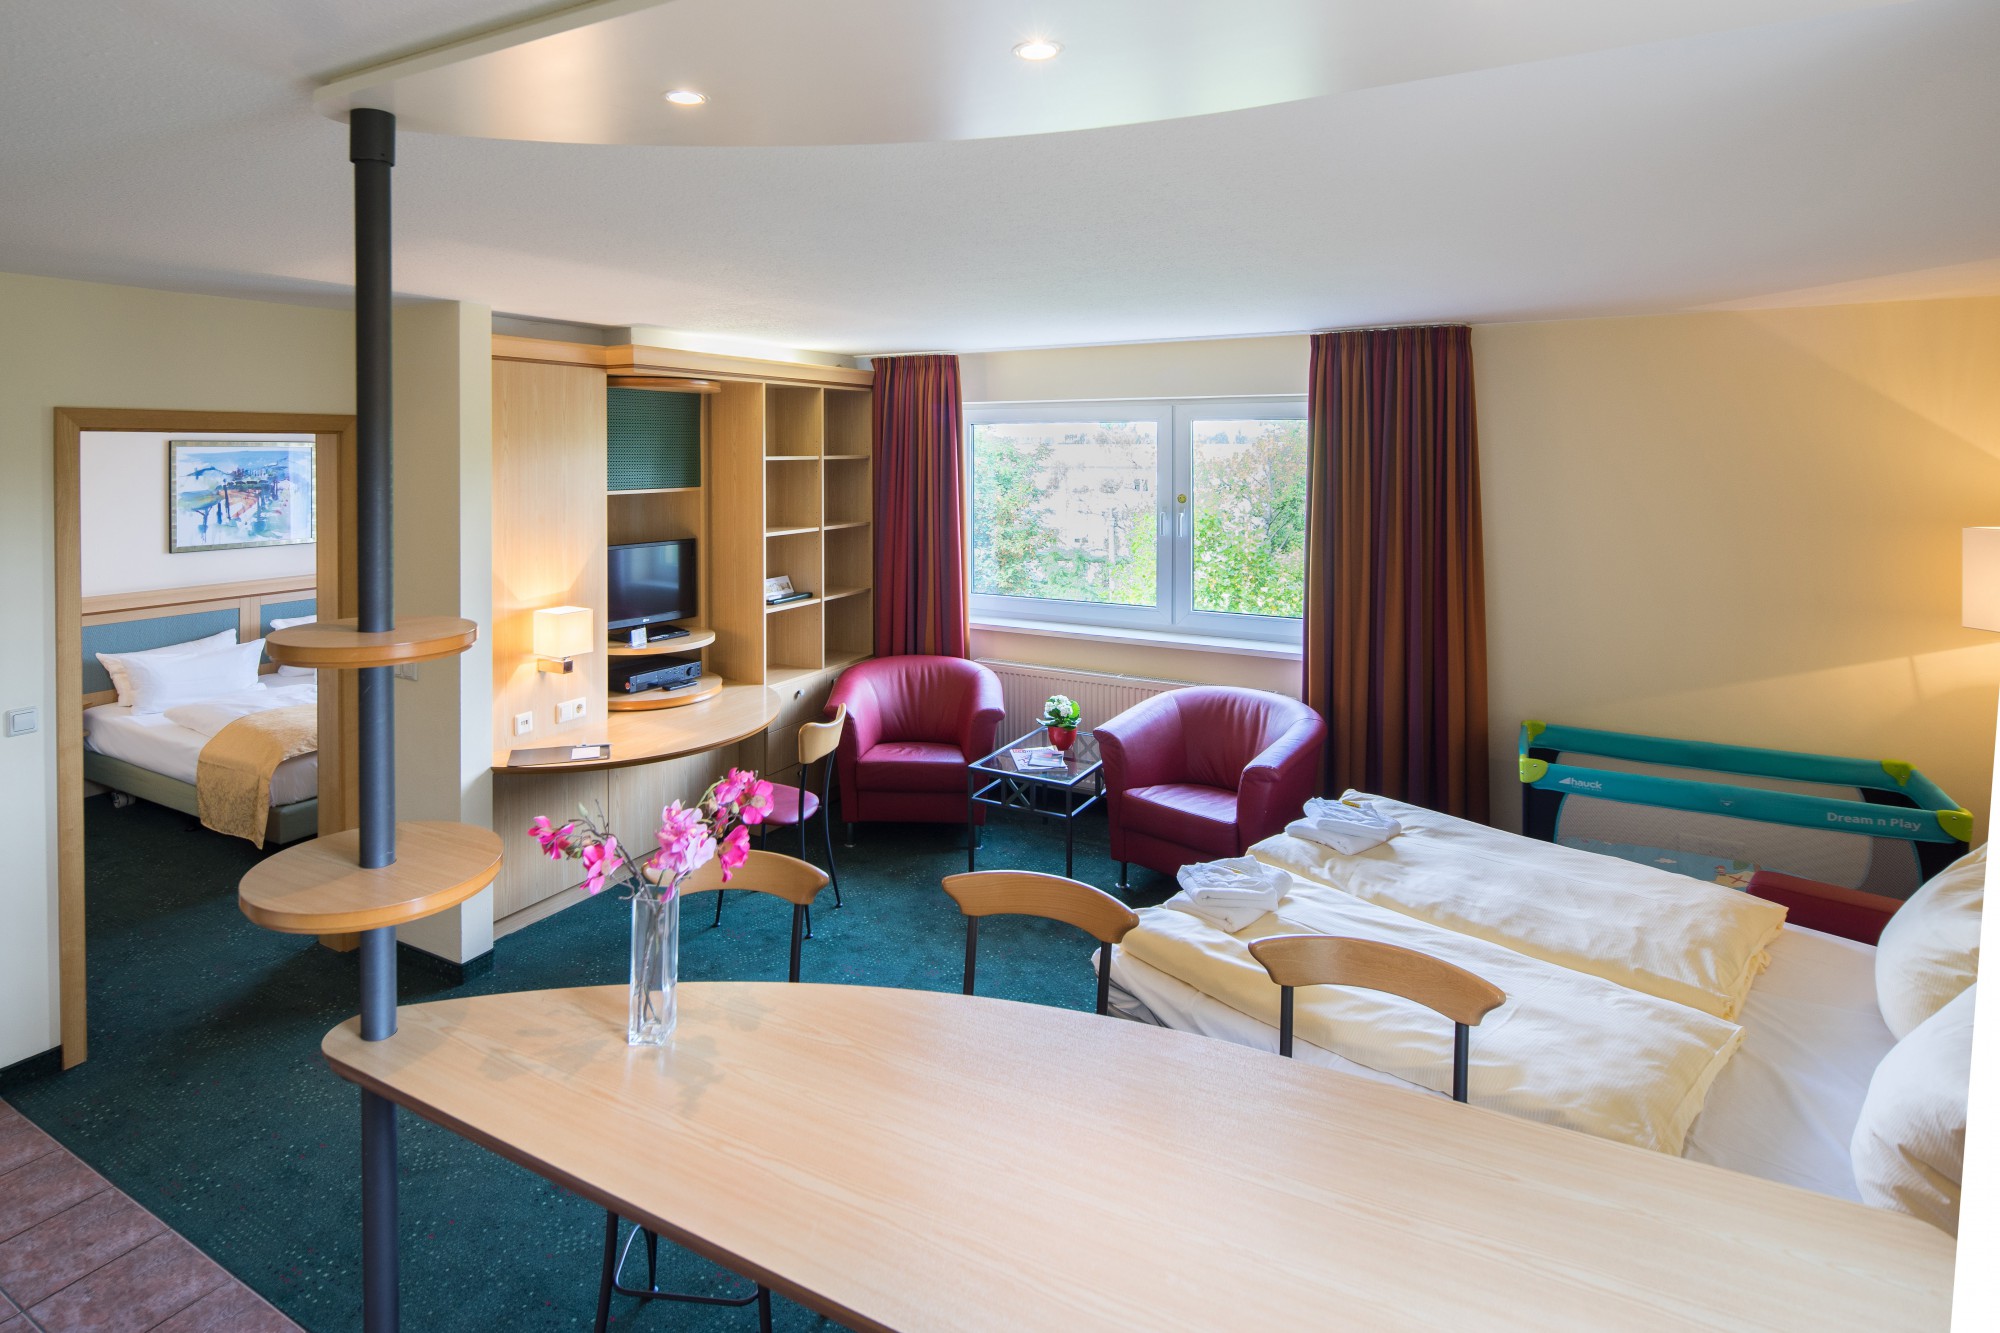 Blick auf Schlafzimmer und Wohnbereich einer Suite im Suite Hotel Leipzig